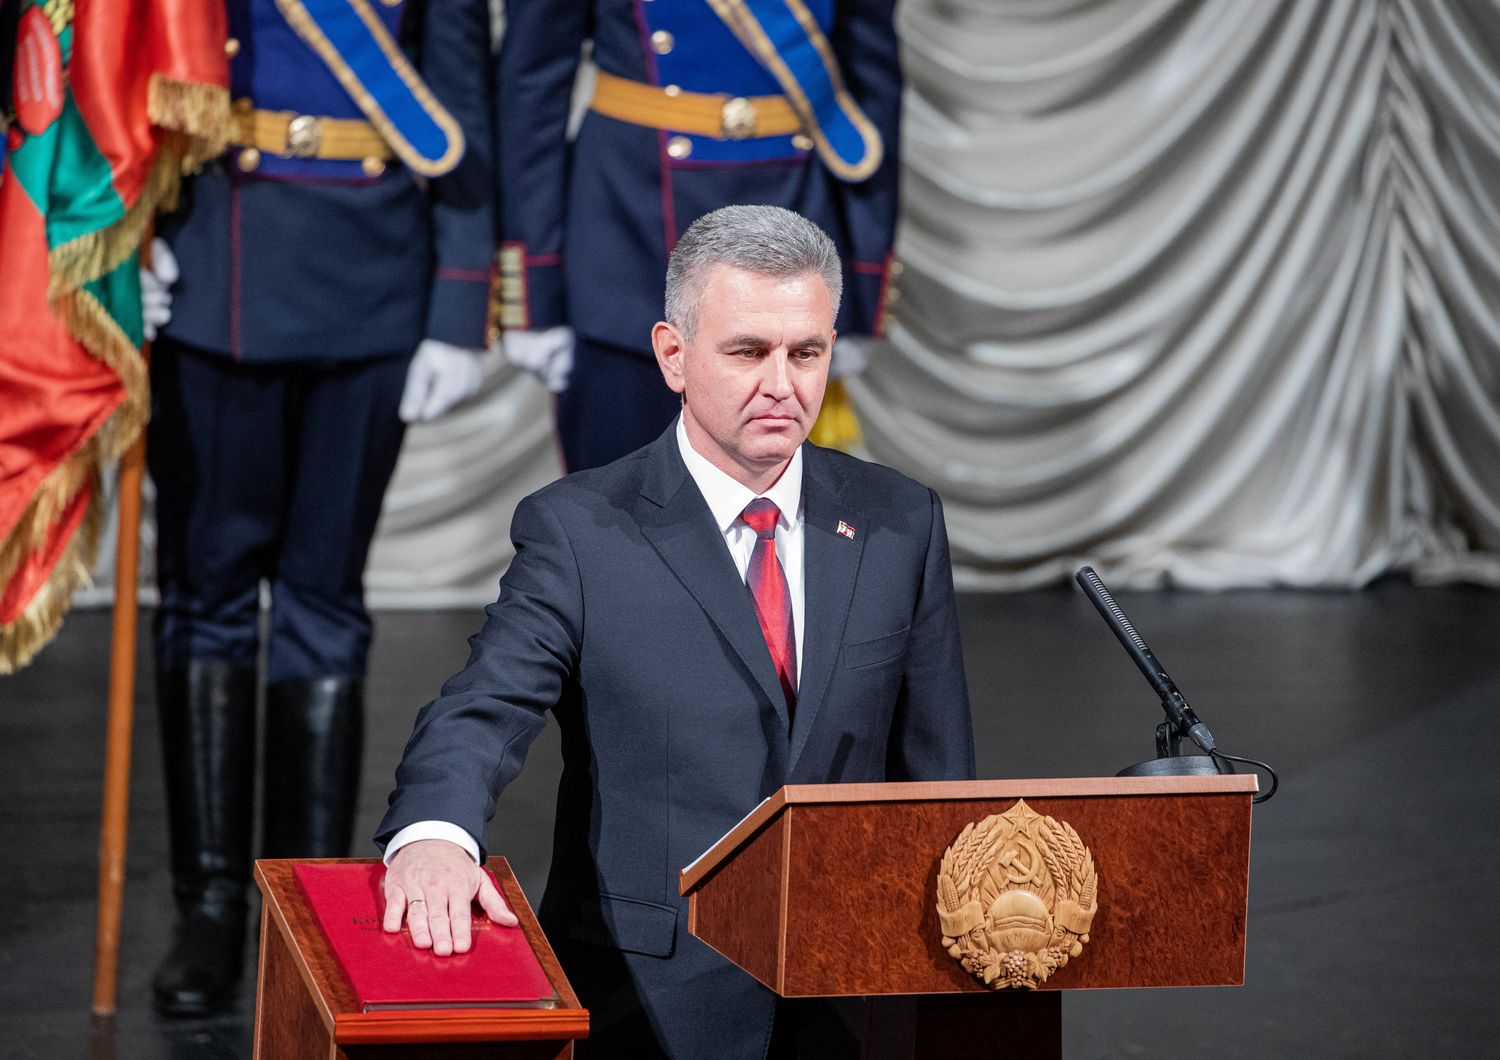 Il  presidente dell'autoproclamata Repubblica Moldava Pridnestroviana (Transnistria), Vadim Krasnoselsky&nbsp;